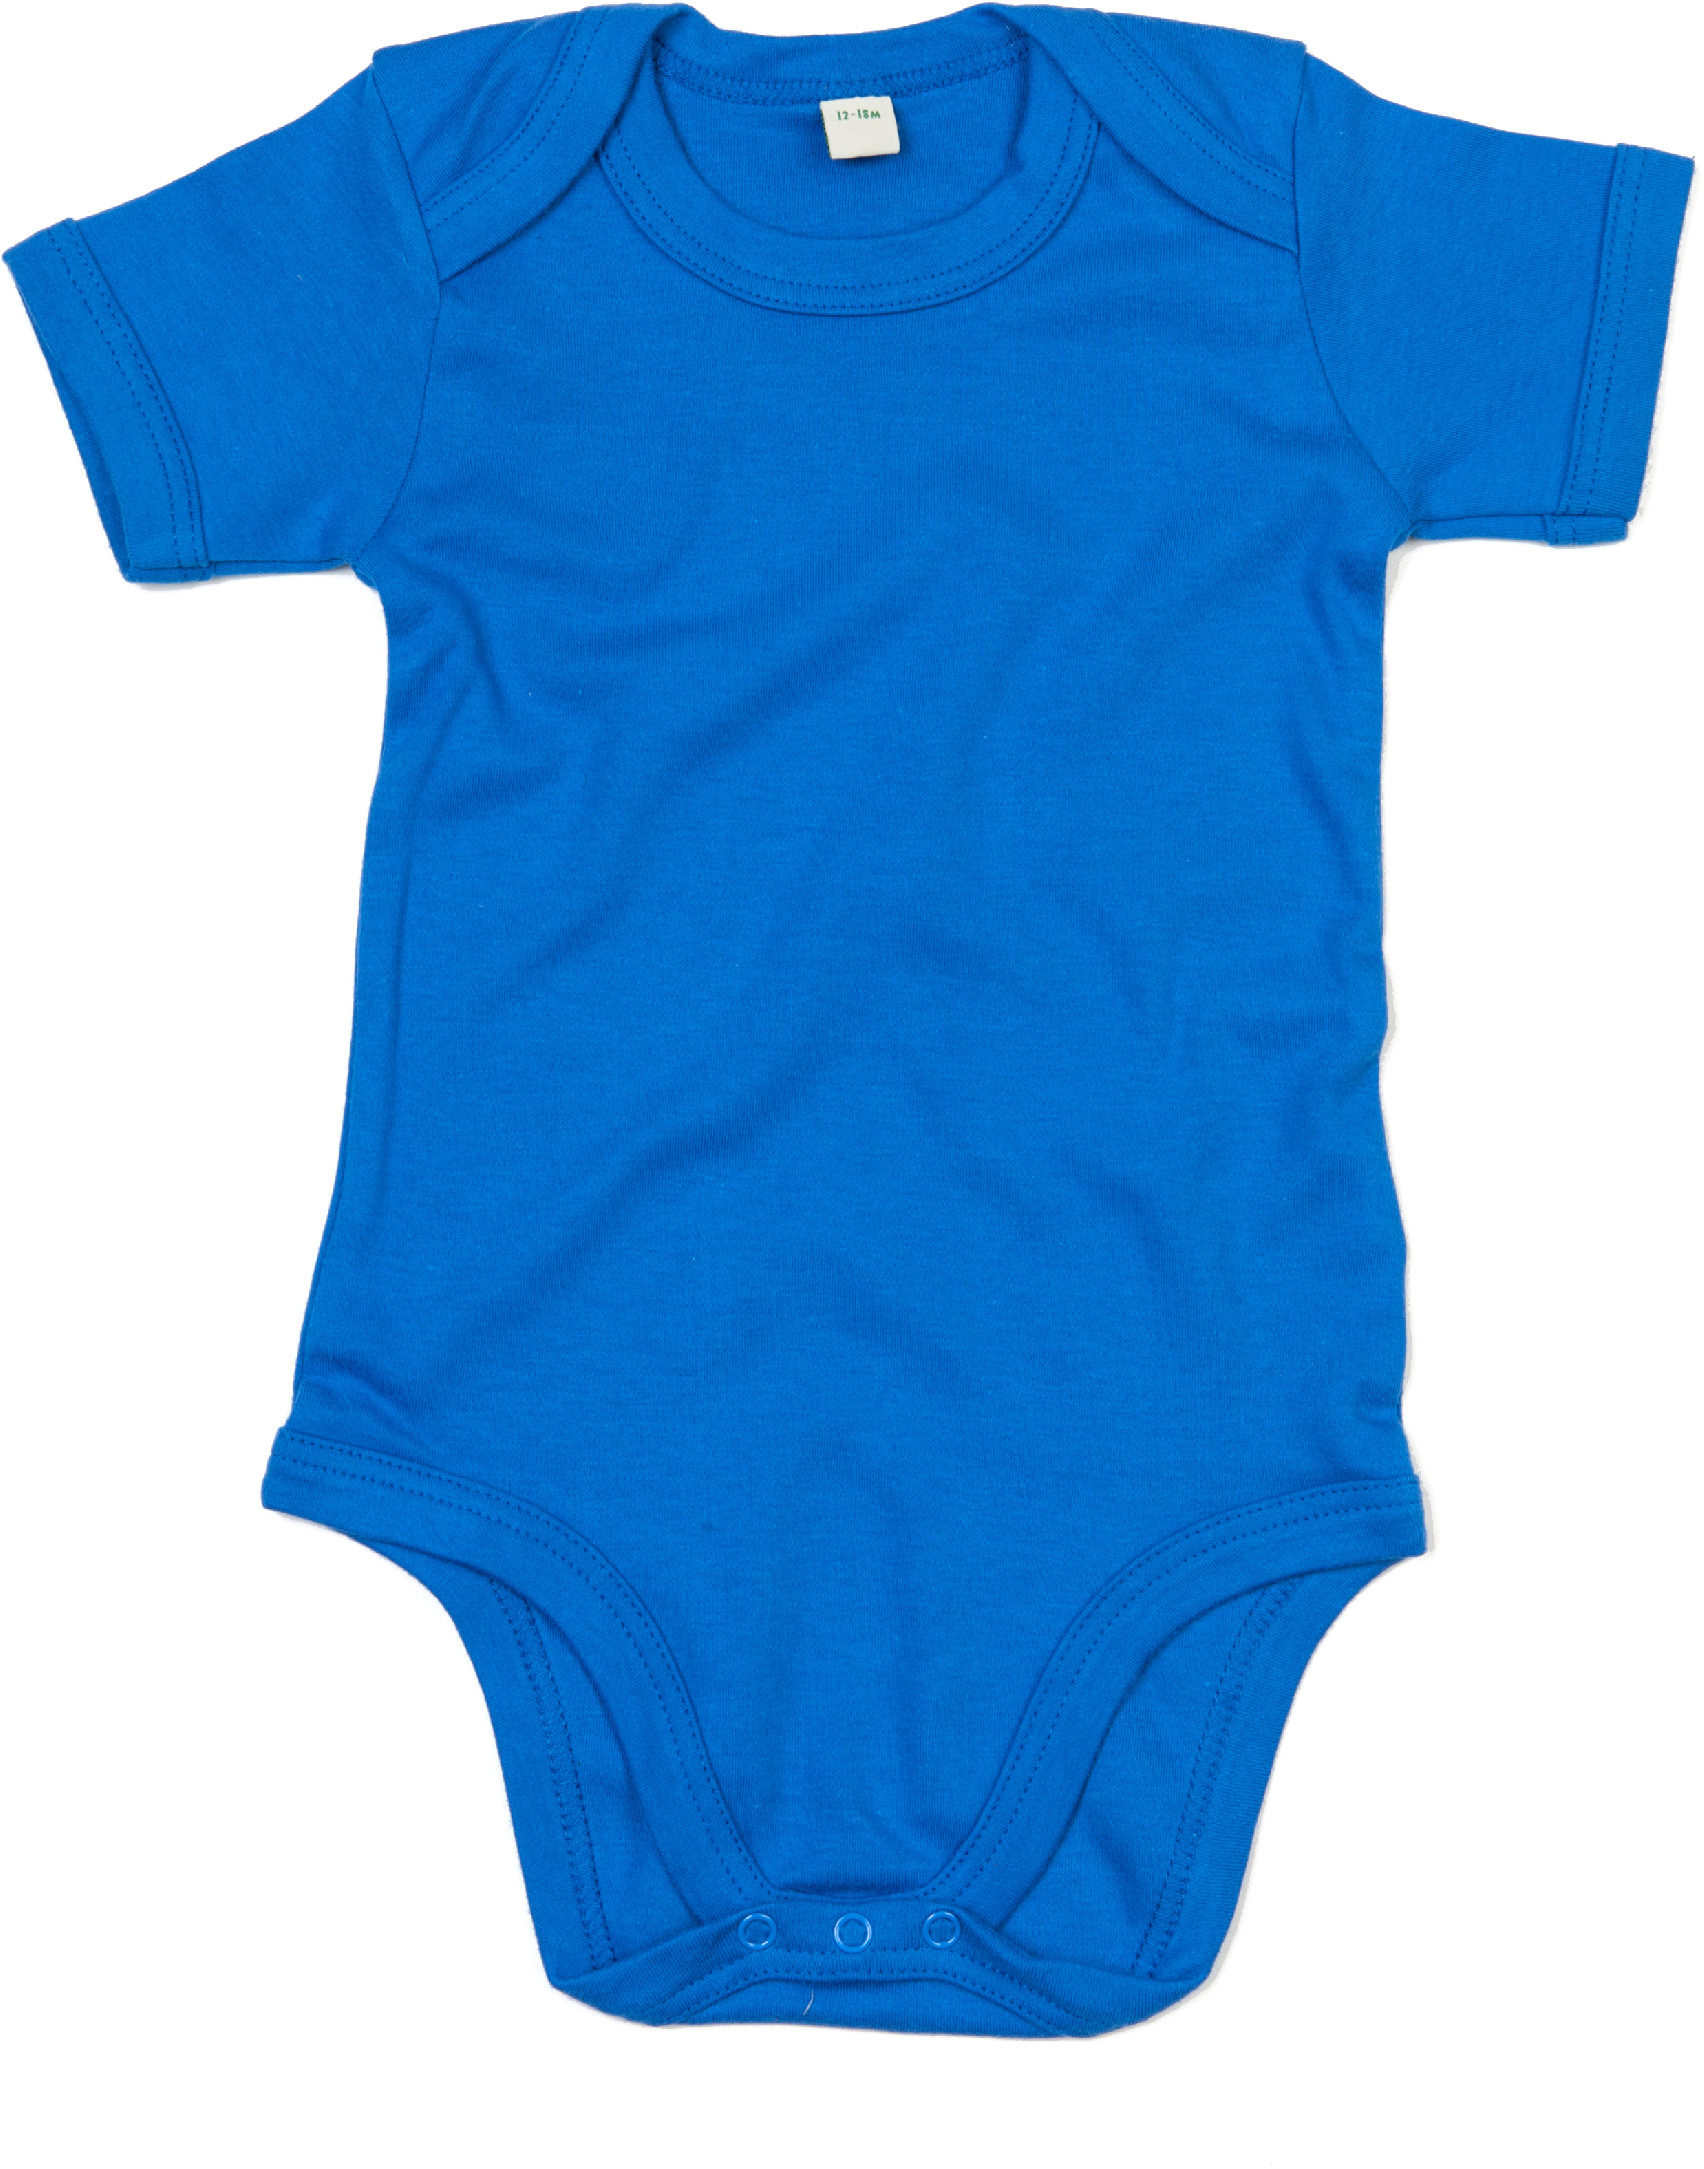 Dětské body BZ10 Barva: snorkel blue, Velikost: 0-3 měsíce